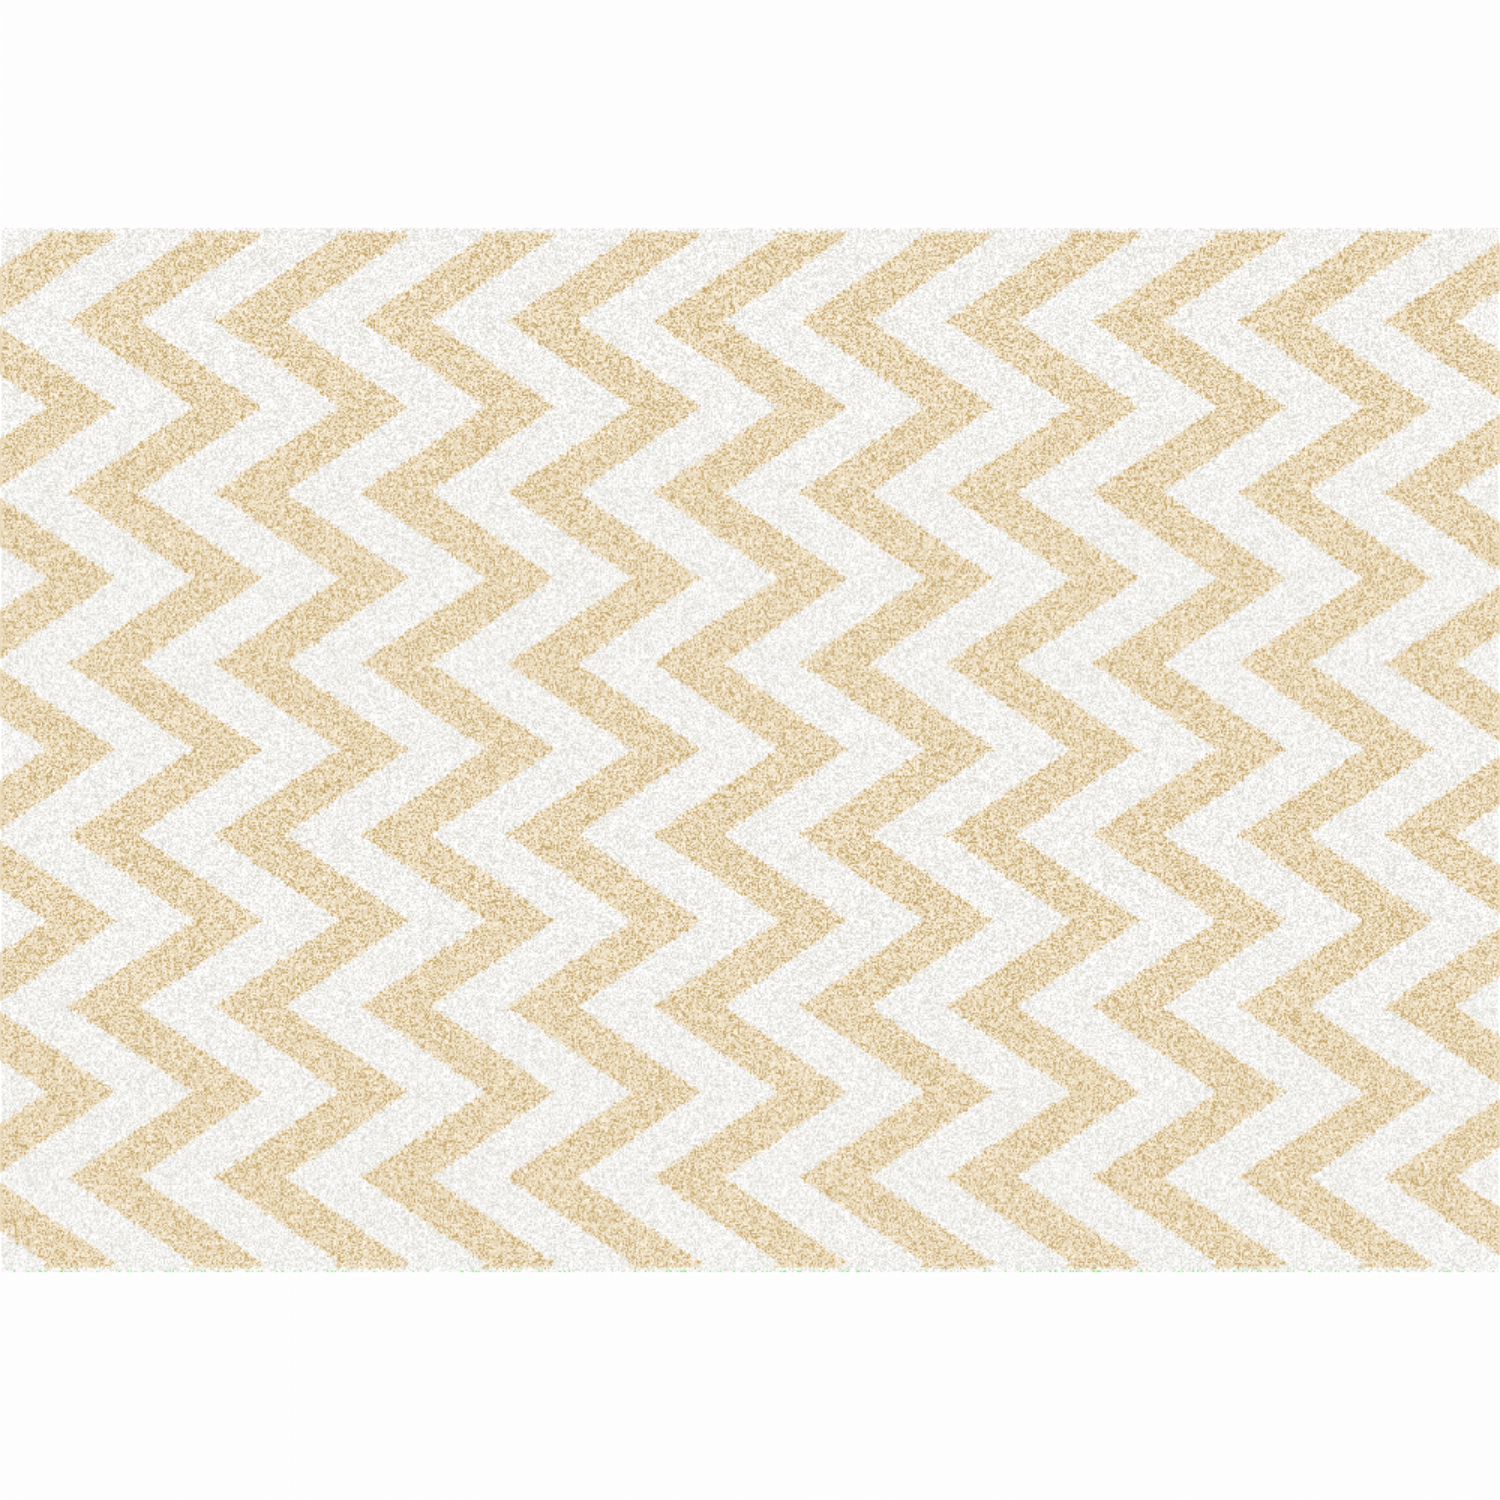 Szőnyeg, bézs-fehér minta, 57x90, ADISA TYP 2